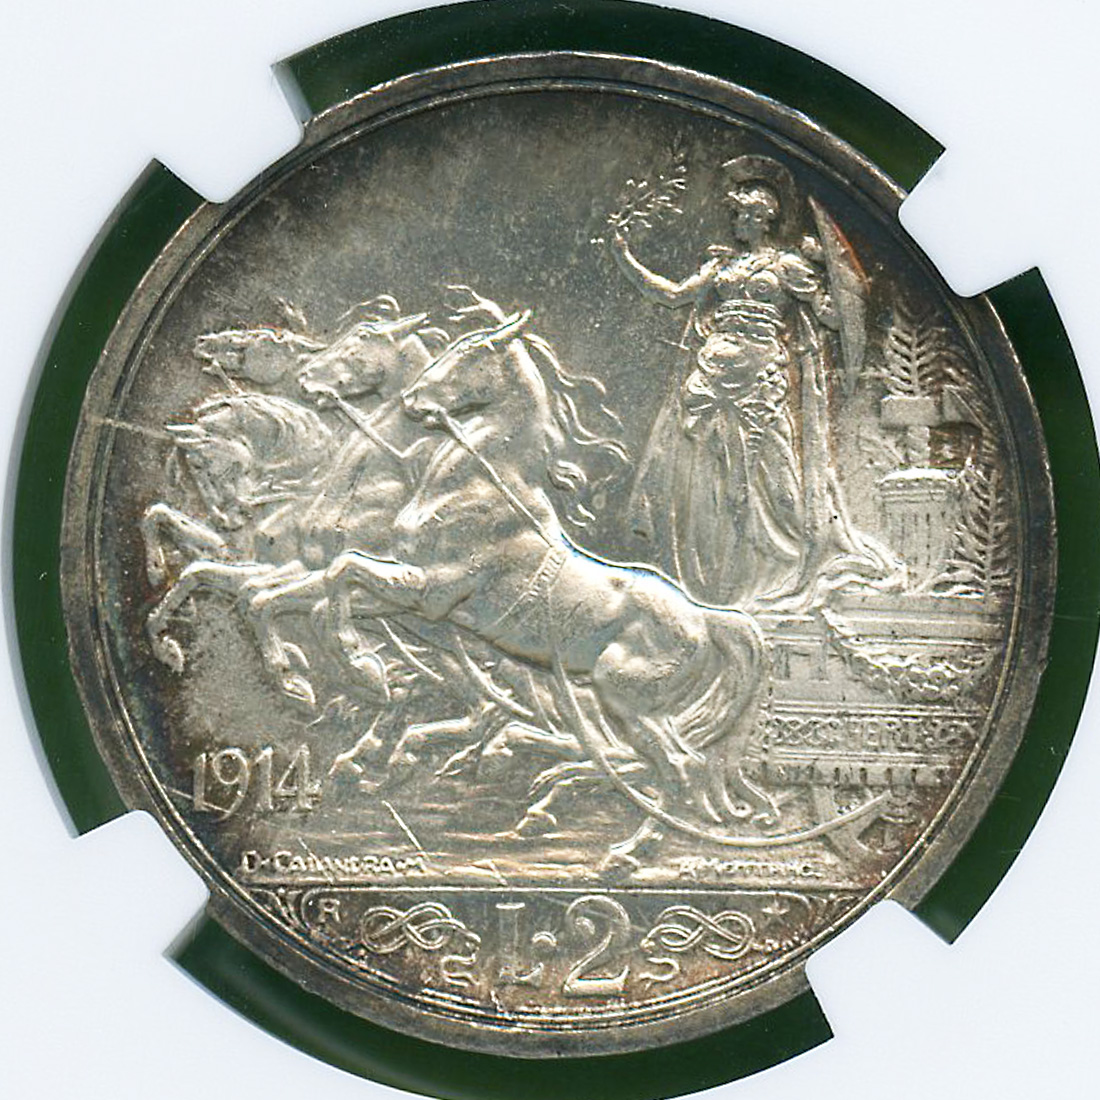 最新デザインの 1914 イタリア銀貨 A4 クアドリガビットーリオエマヌエレ3世未使用 2リレ 旧貨幣/金貨/銀貨/記念硬貨 -  eshopper.vc